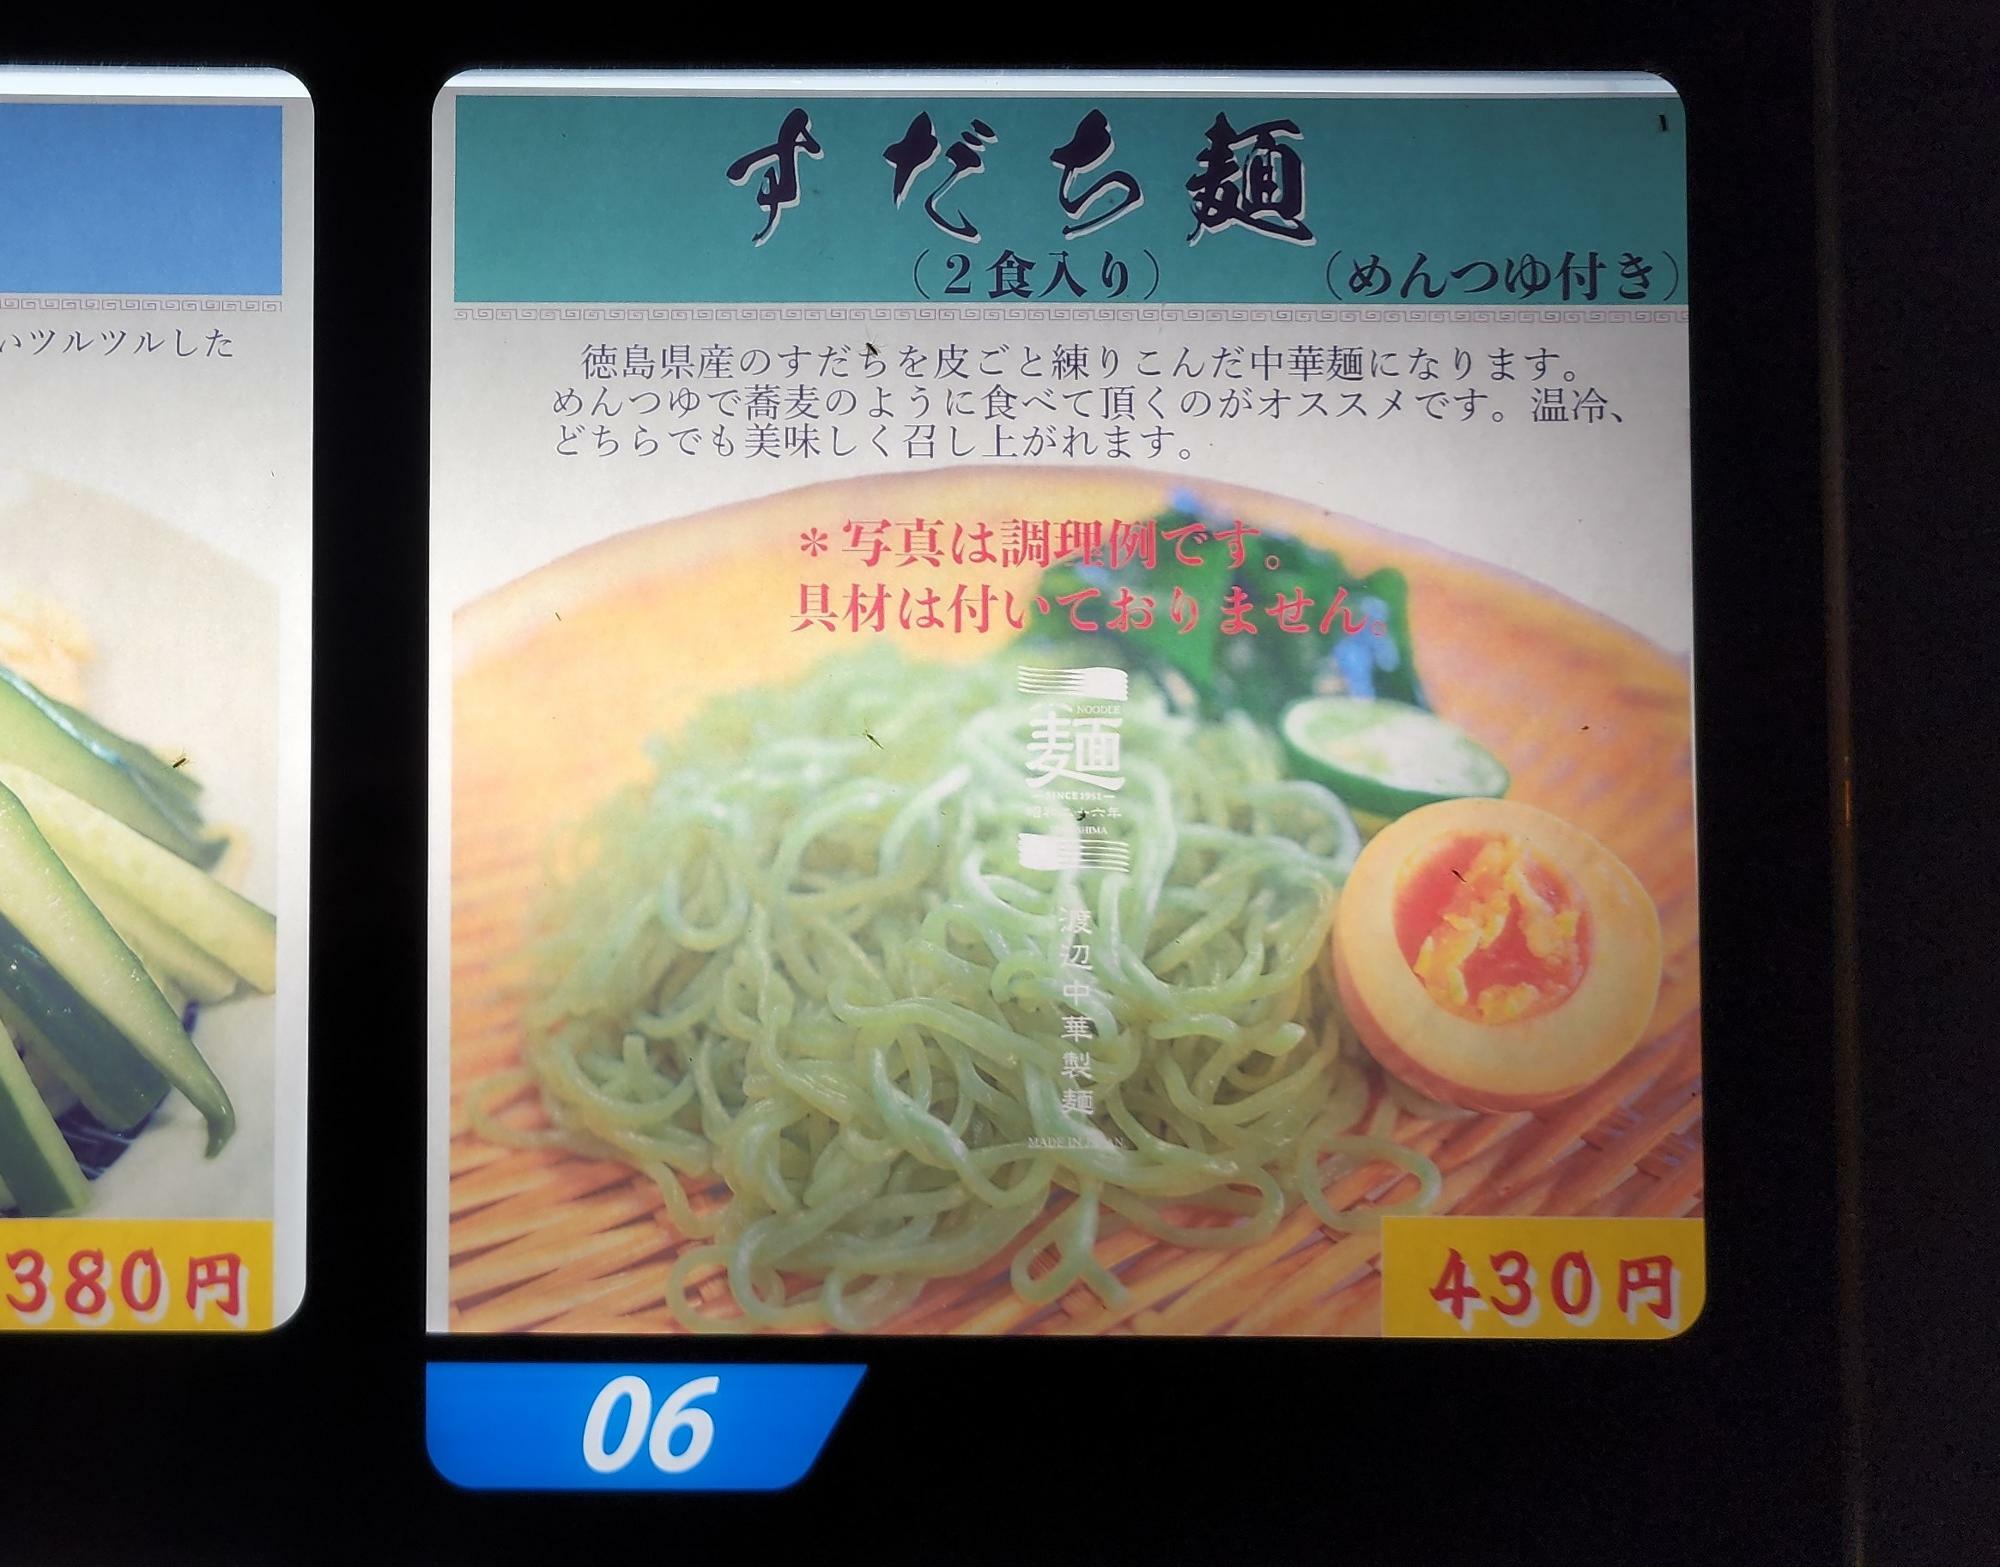 「渡辺中華製麺」の自動販売機。すだち麵。